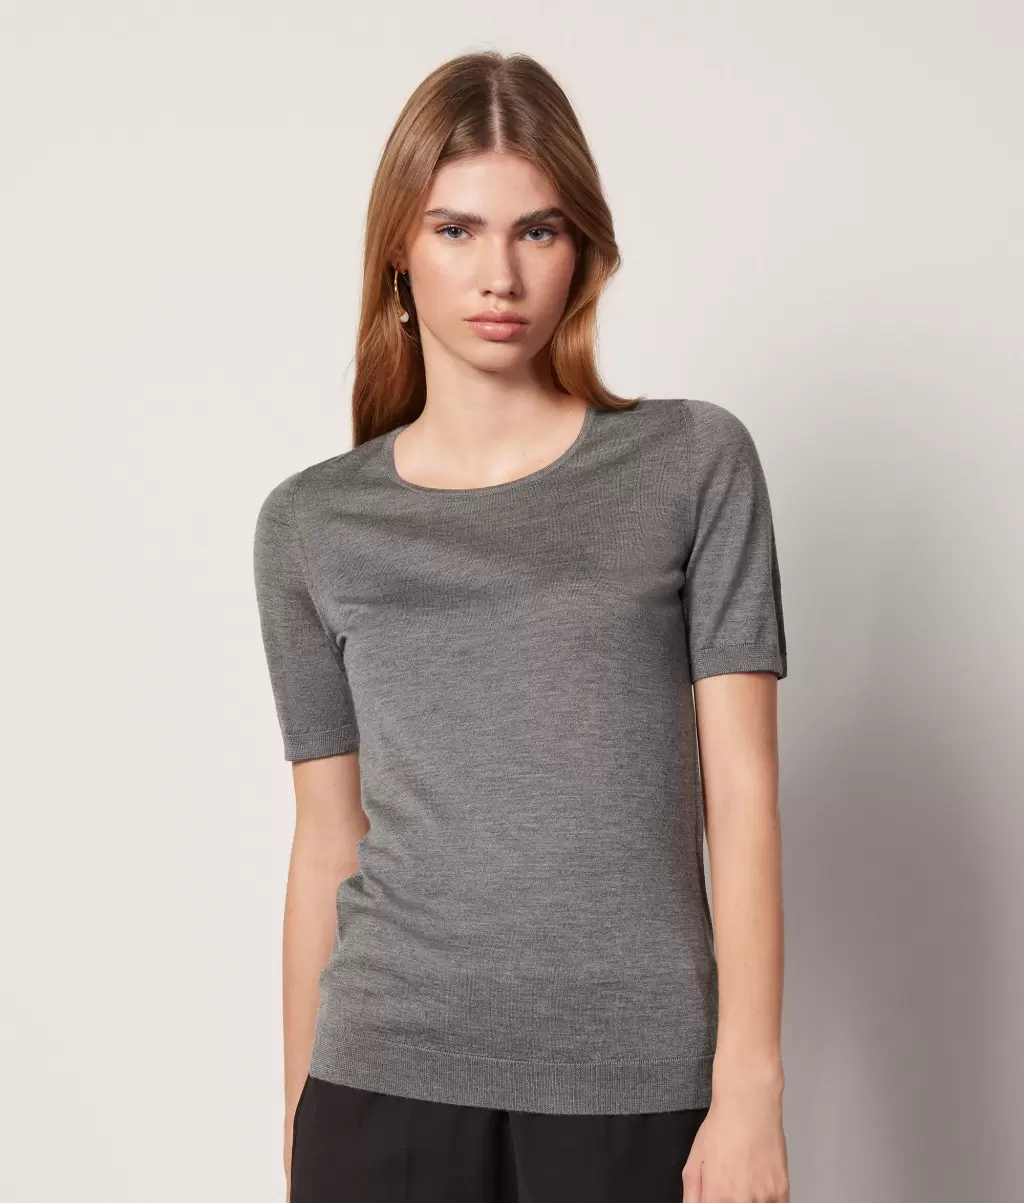 Pulower Z Krótkim Rękawem Z Kaszmiru Ultrafine Kobieta Topy I T-Shirty Grey Falconeri - 1